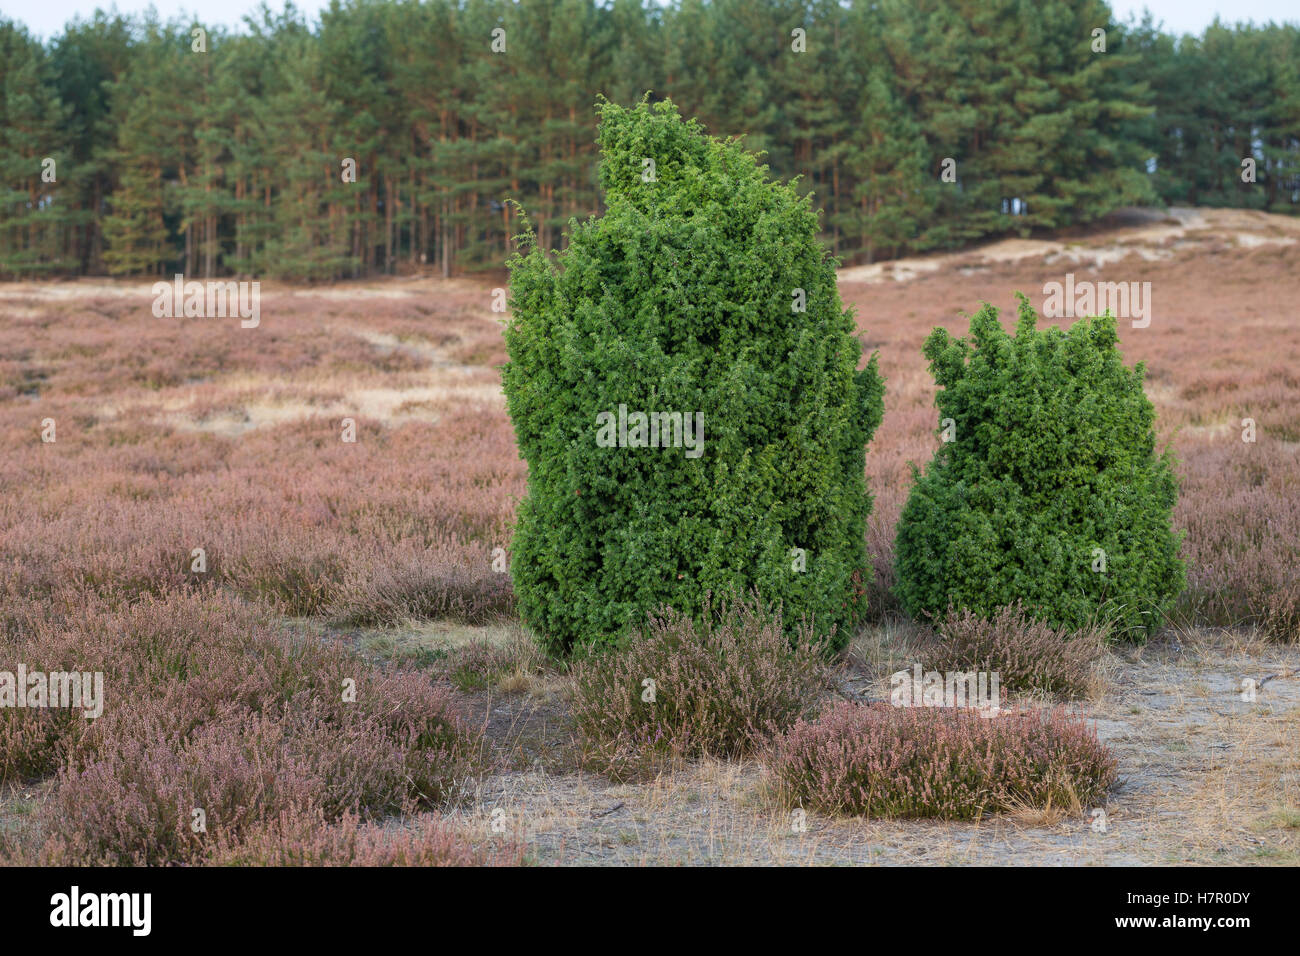 Gemeiner Wacholder, Heide-Wacholder, Heidewacholder, Juniperus communis, Common Juniper Stock Photo